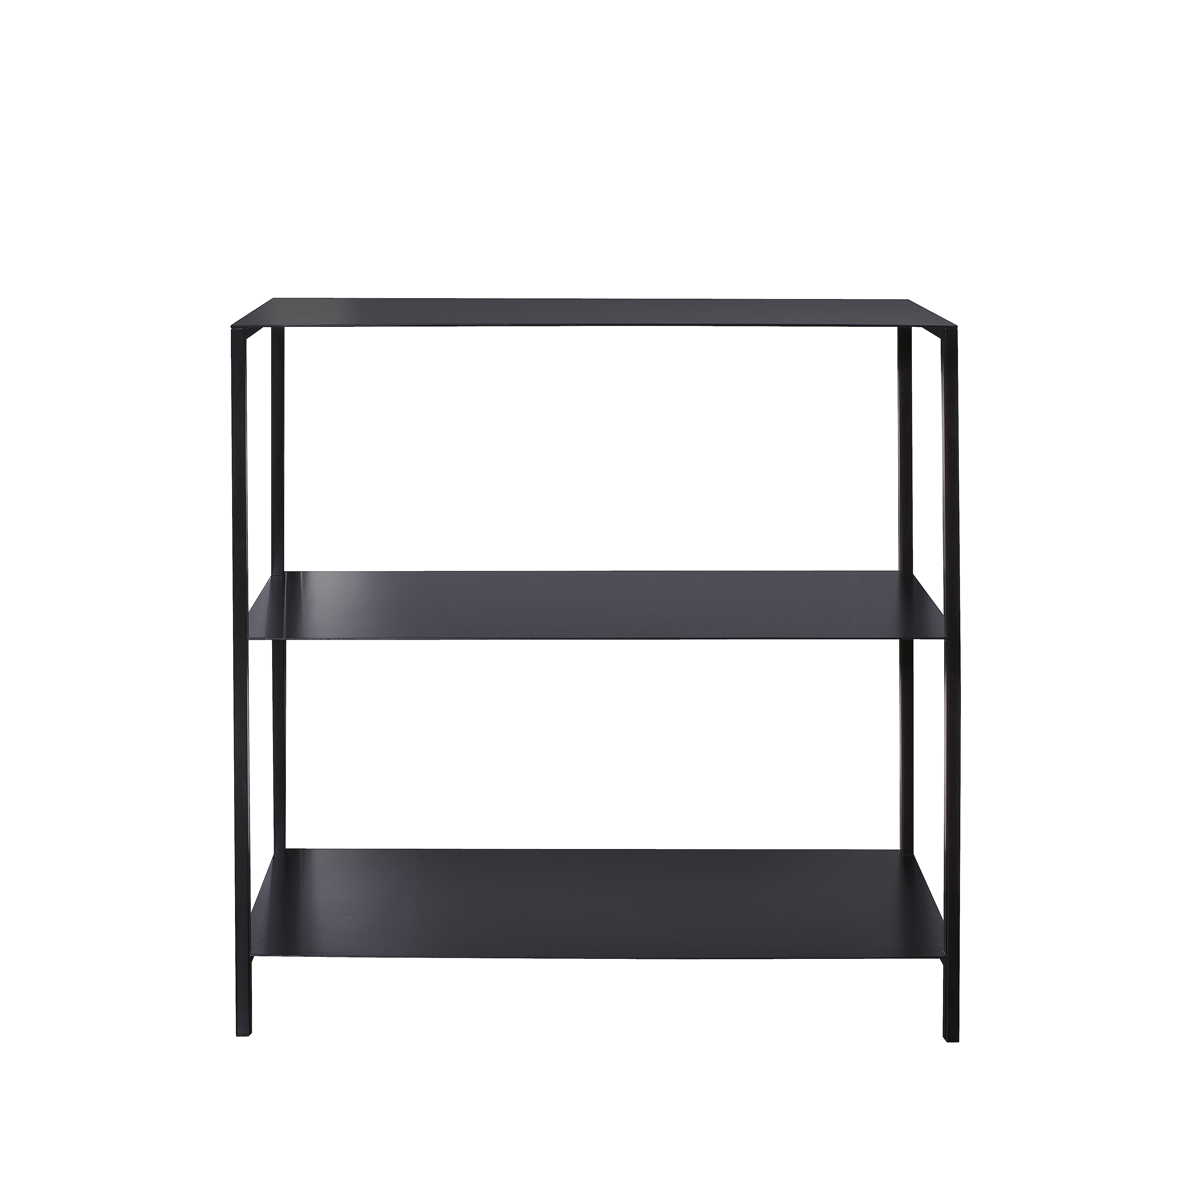 Folded plate shelf unit with 2 shelves - LIM.co.za